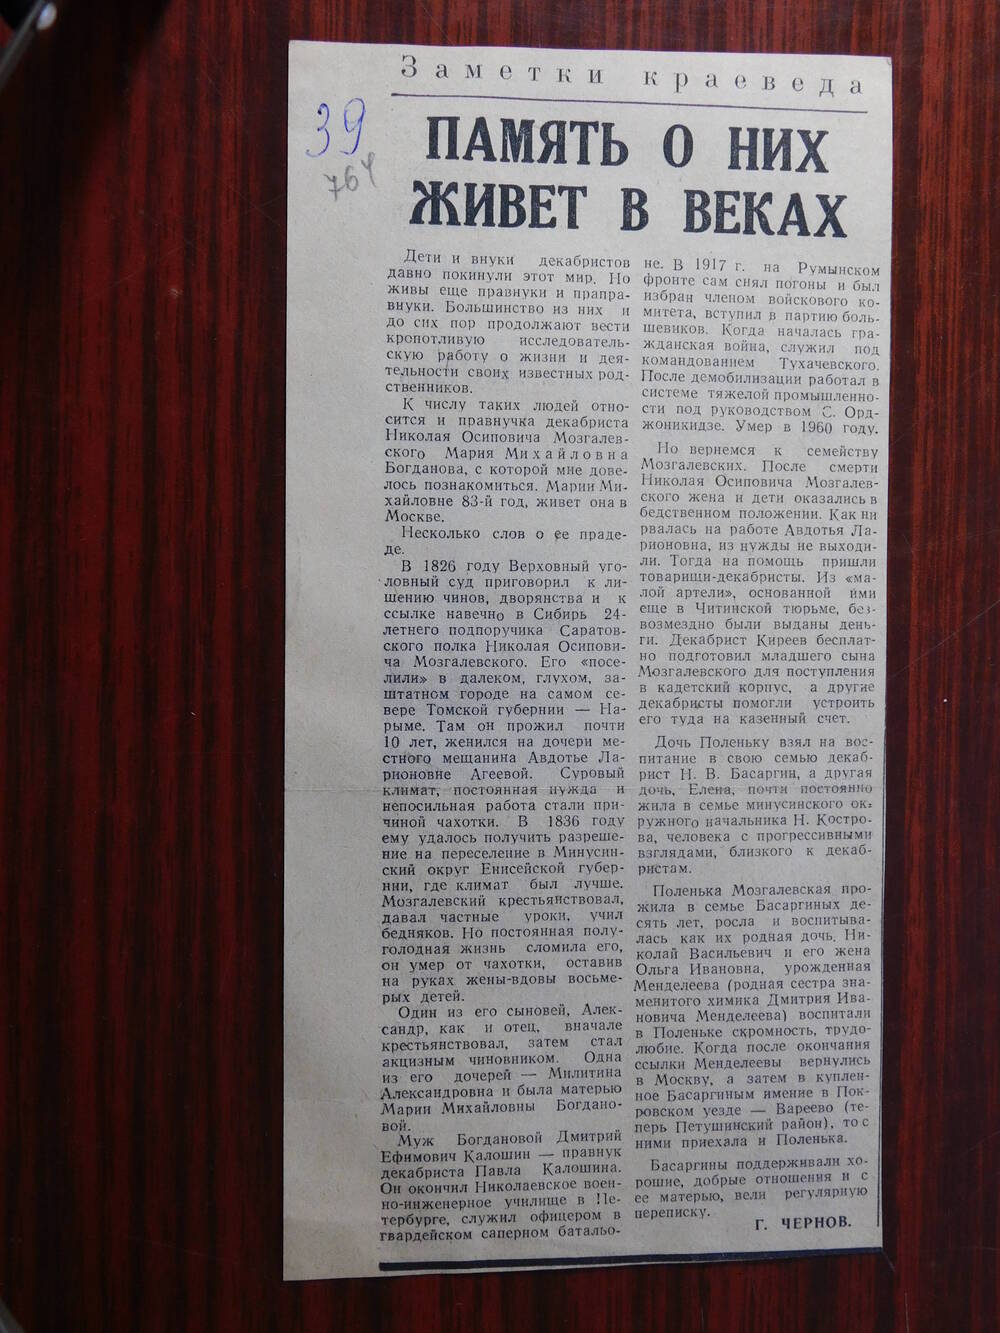 Фрагмент газеты Призыв от 22 июля 1978 г. Ст. Г. Чернов. Память о них живет в веках. Владимир.